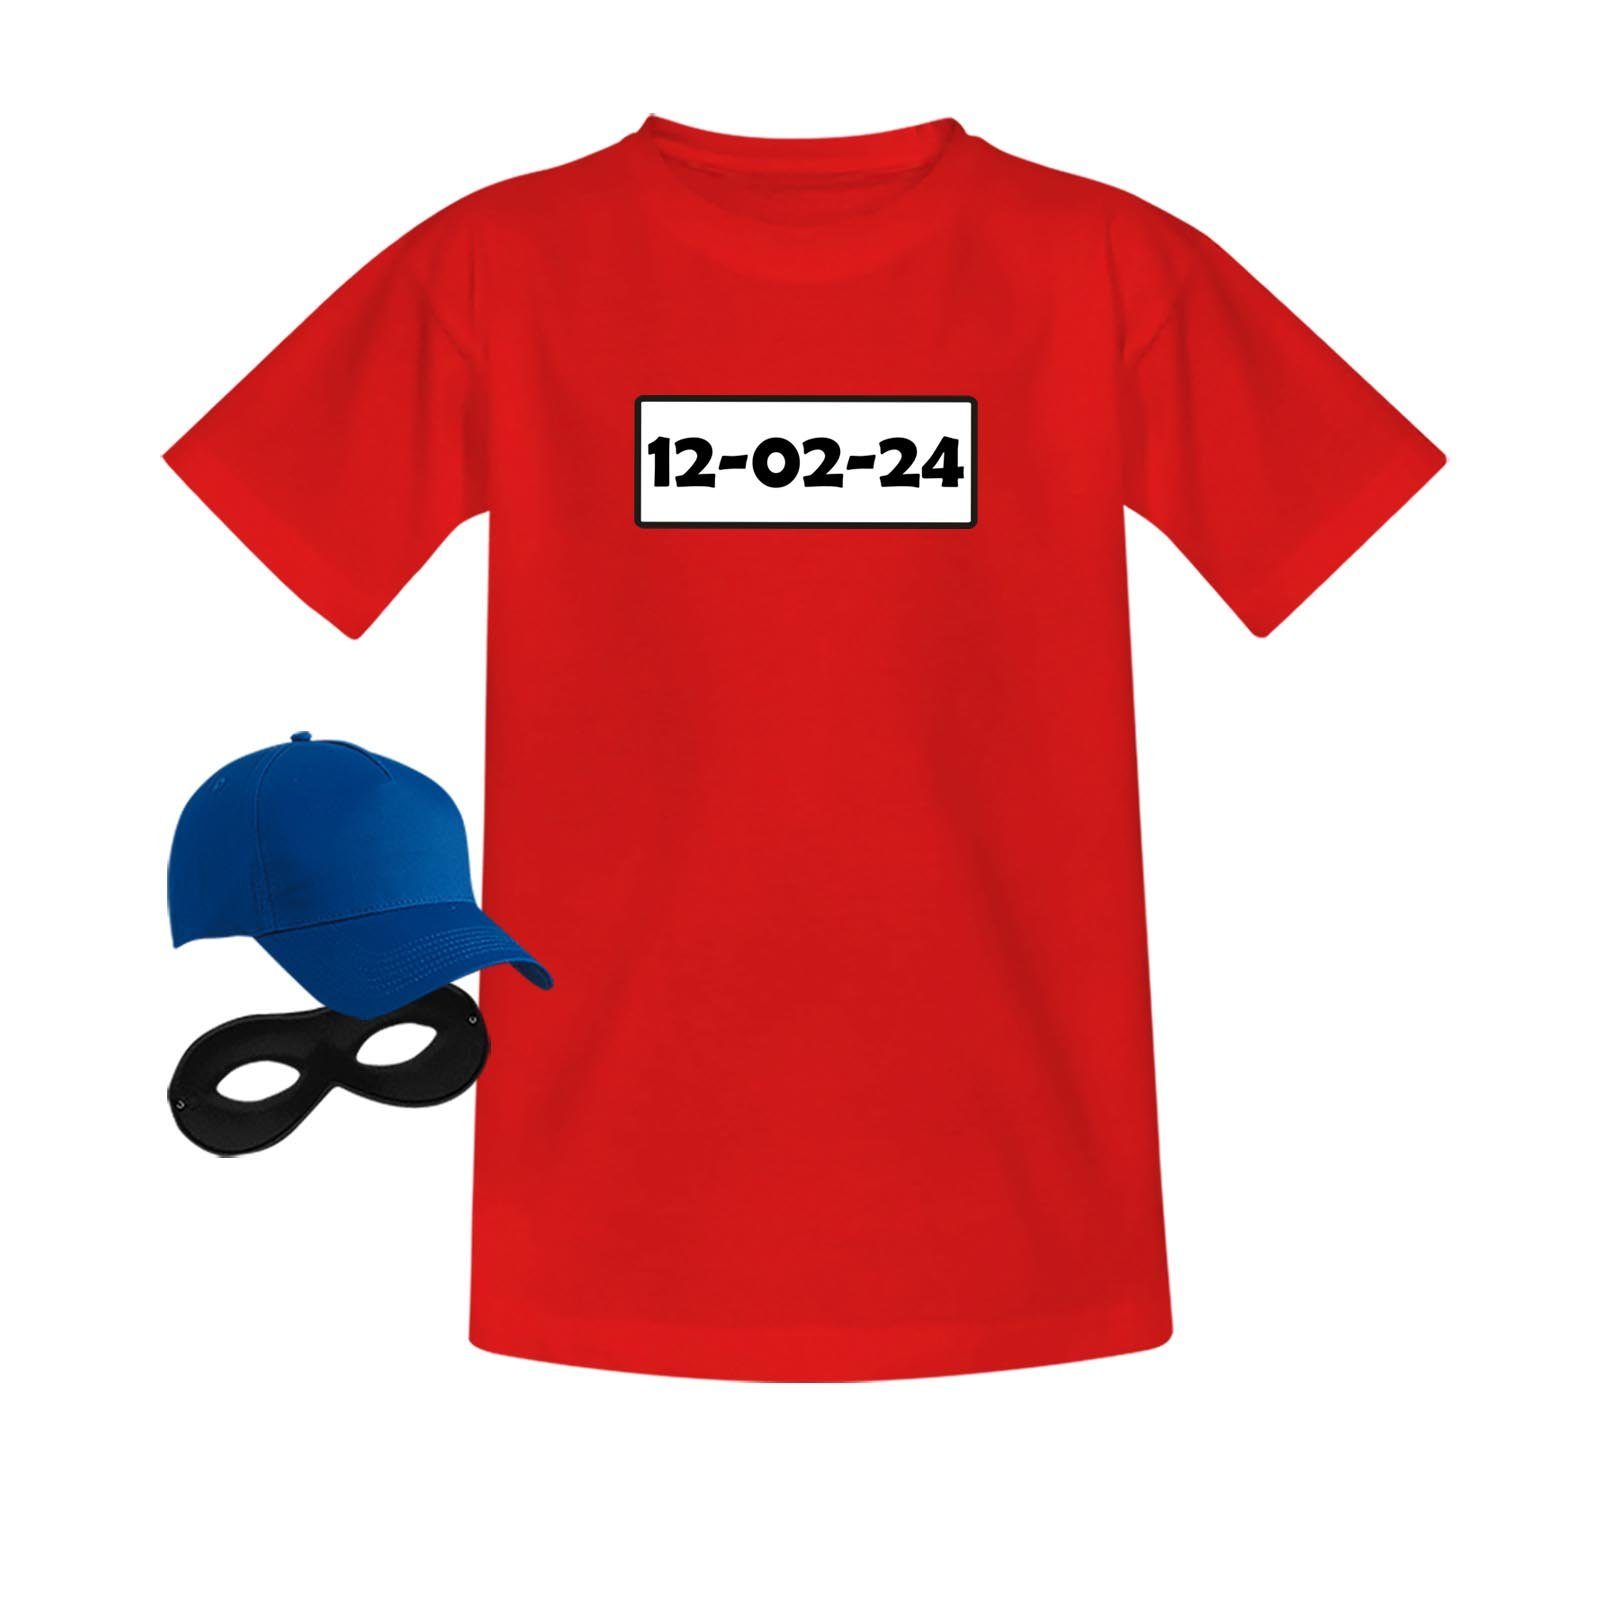 Jimmys Textilfactory Kostüm T-Shirt Panzerknacker Deluxe+ Karneval Kostüm Fasching Kinder 98-164, Shirt+Cap+Maske